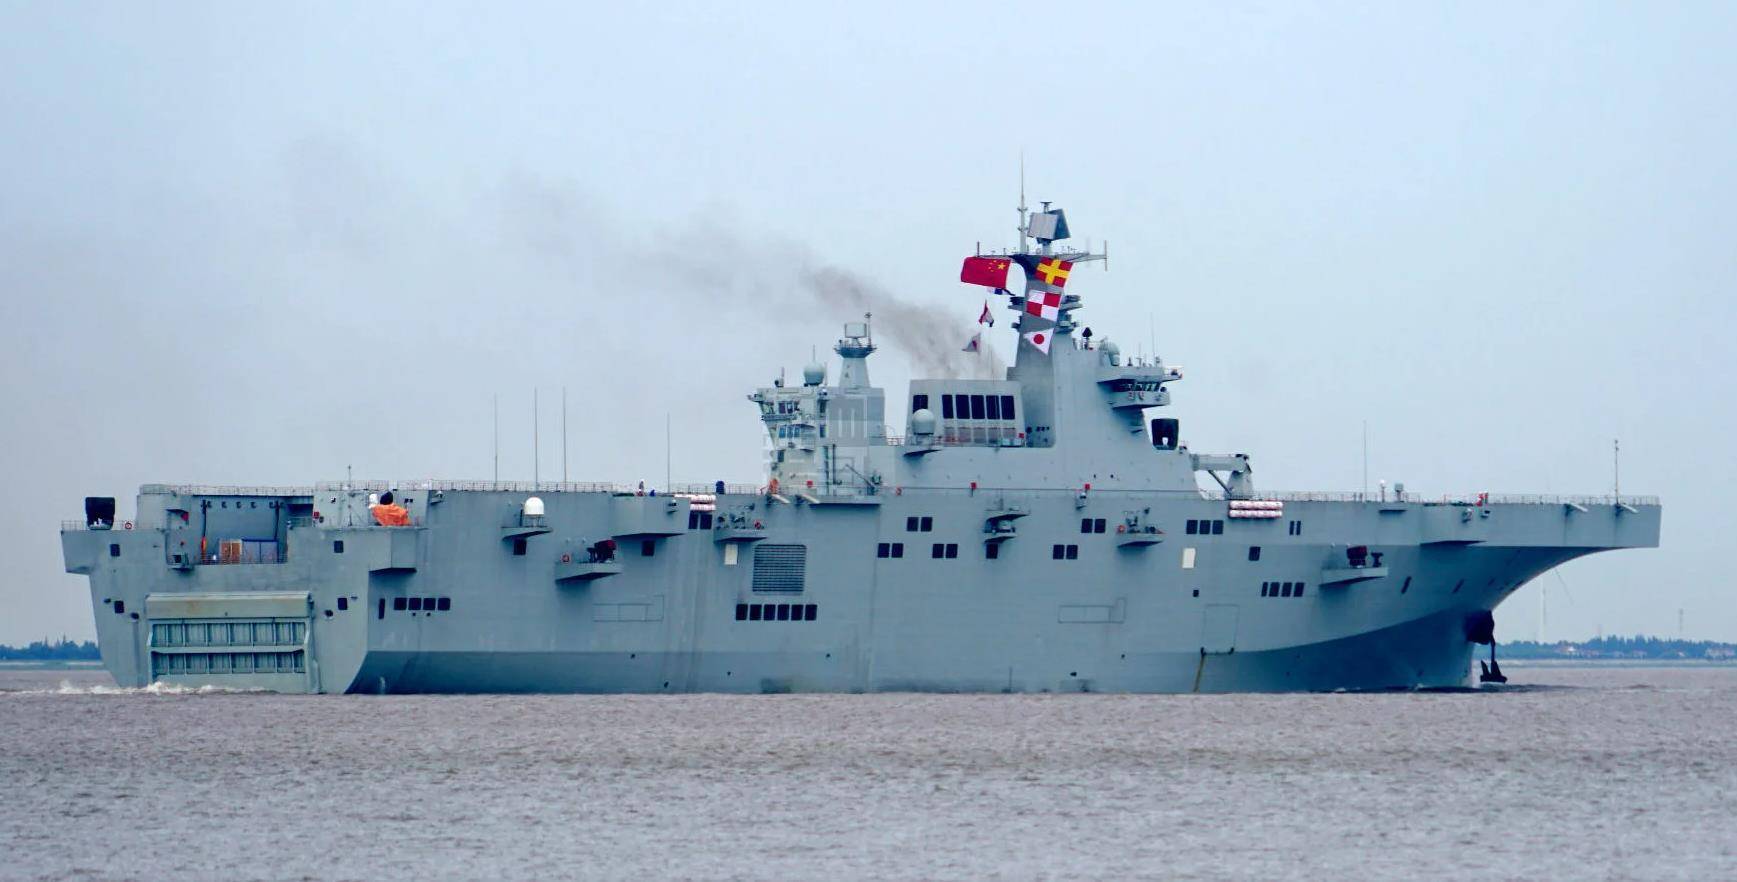 海军海南号攻击舰,拥有4万吨排水量,提供作战新思路